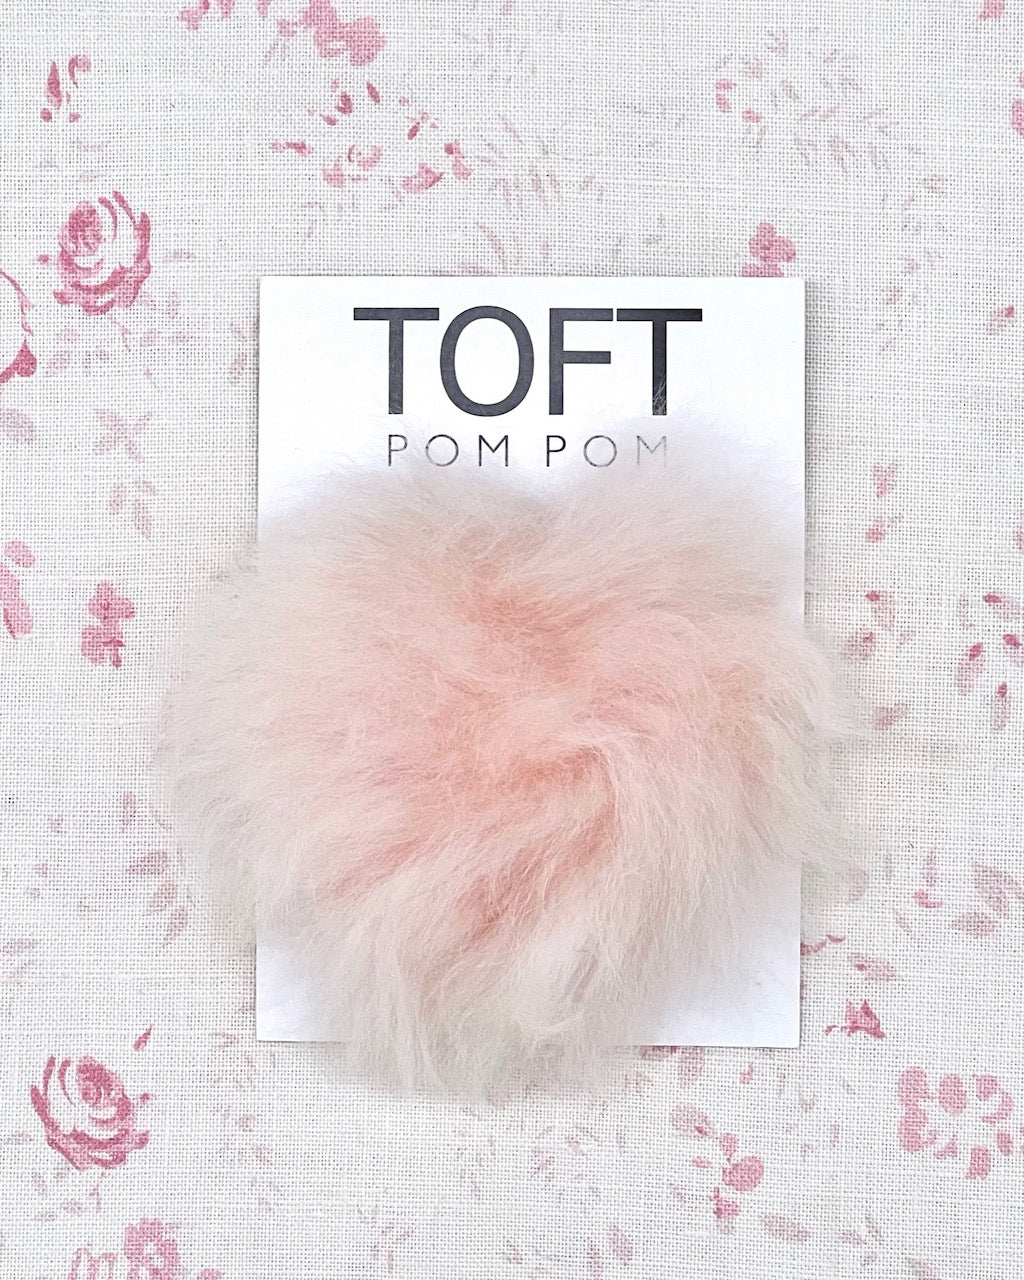 TOFT Bonnet Ethique en Fourrure d'Alpaga Pom Pom - Coloré